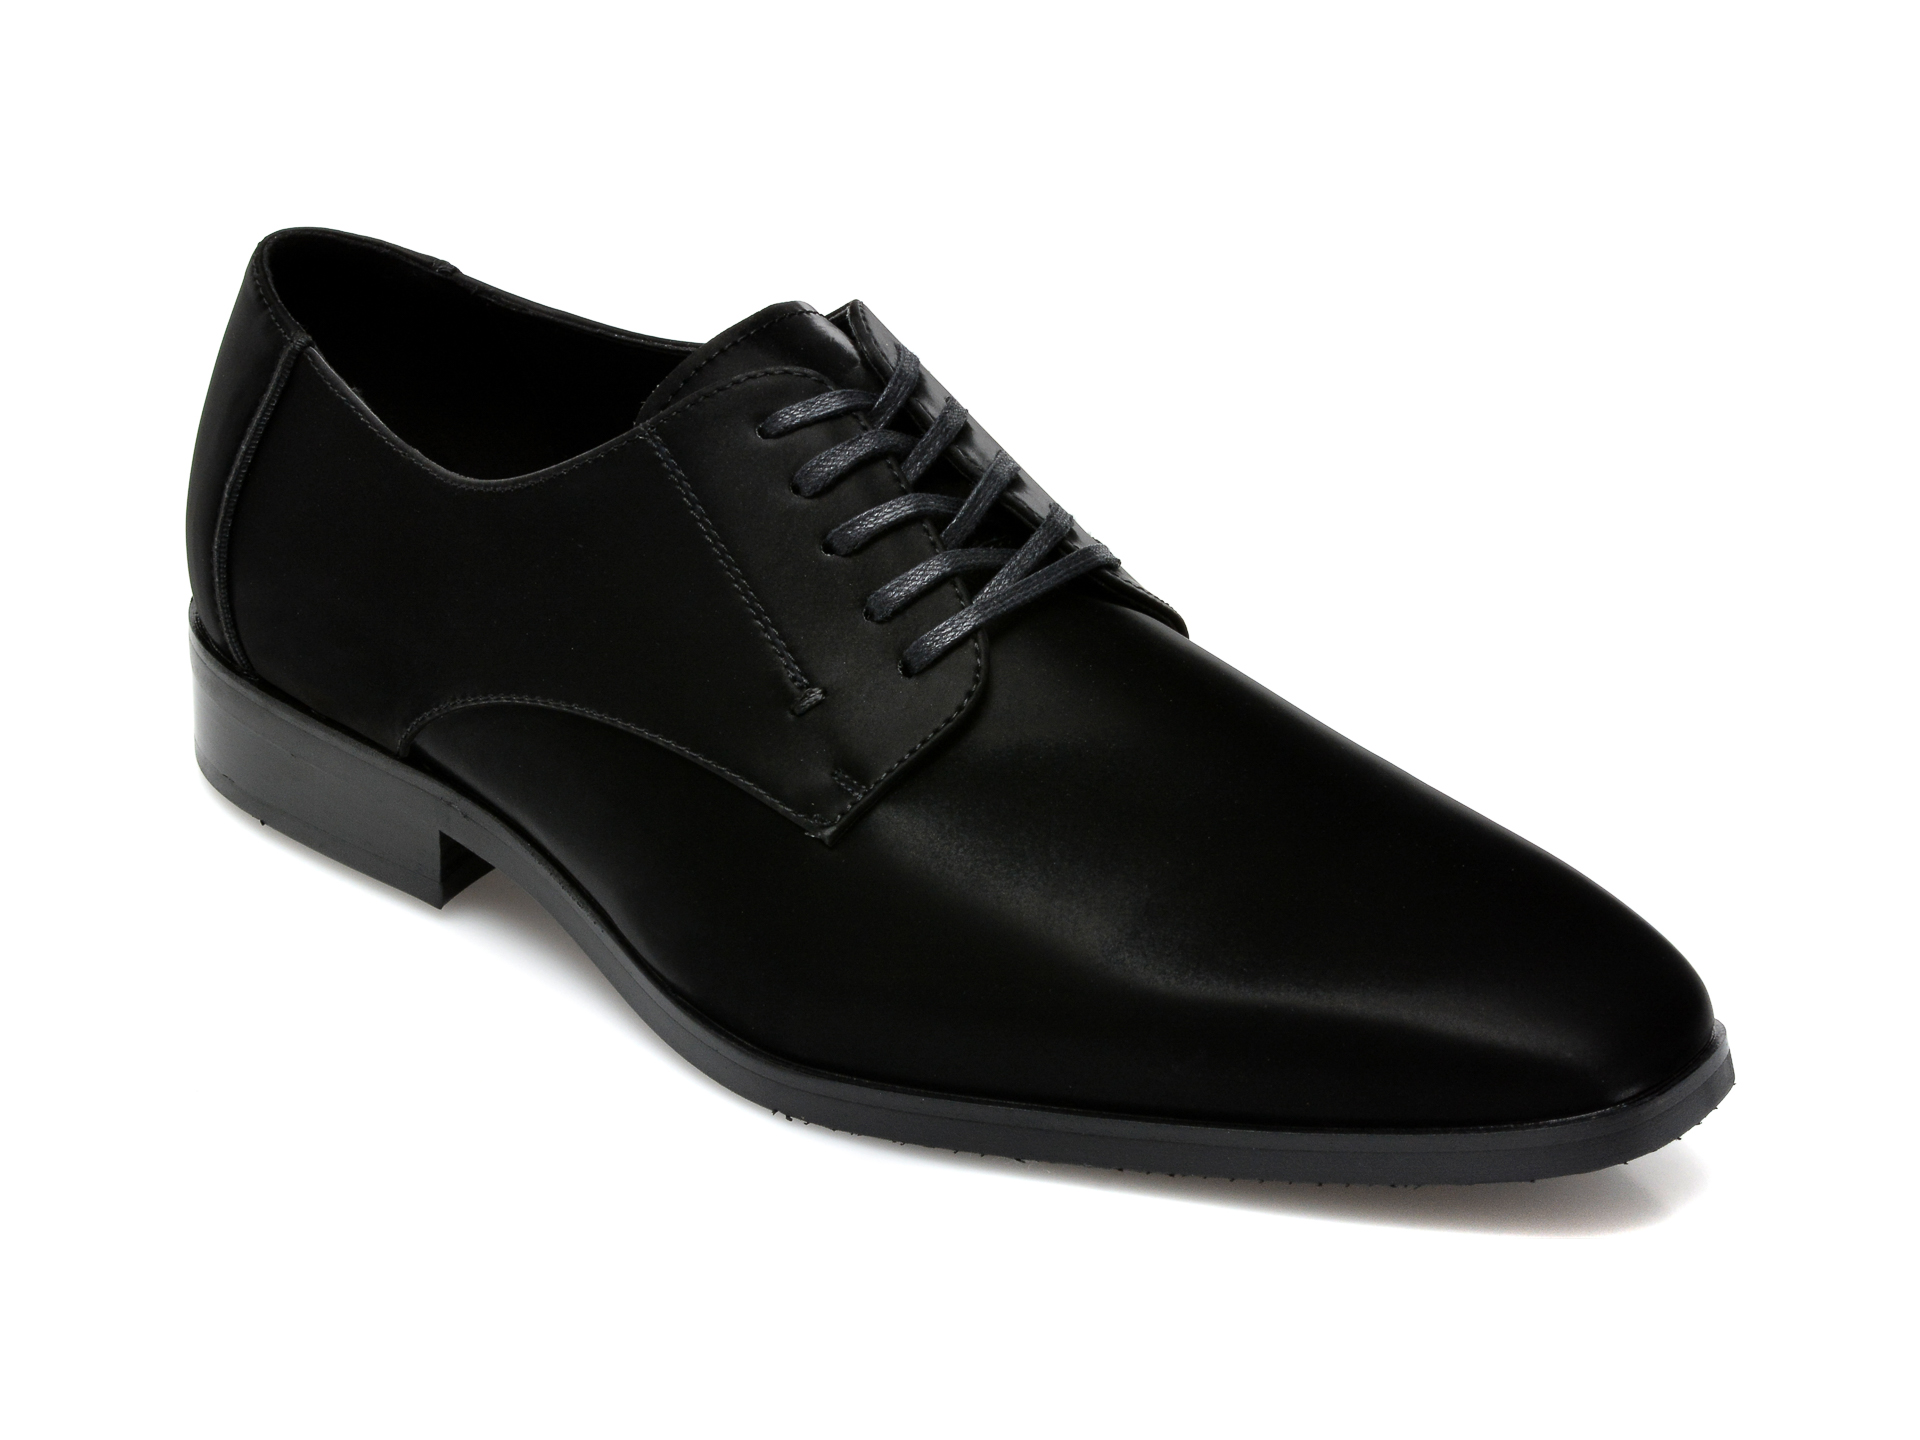 Pantofi ALDO negri, Montecassino004, din piele ecologica Aldo